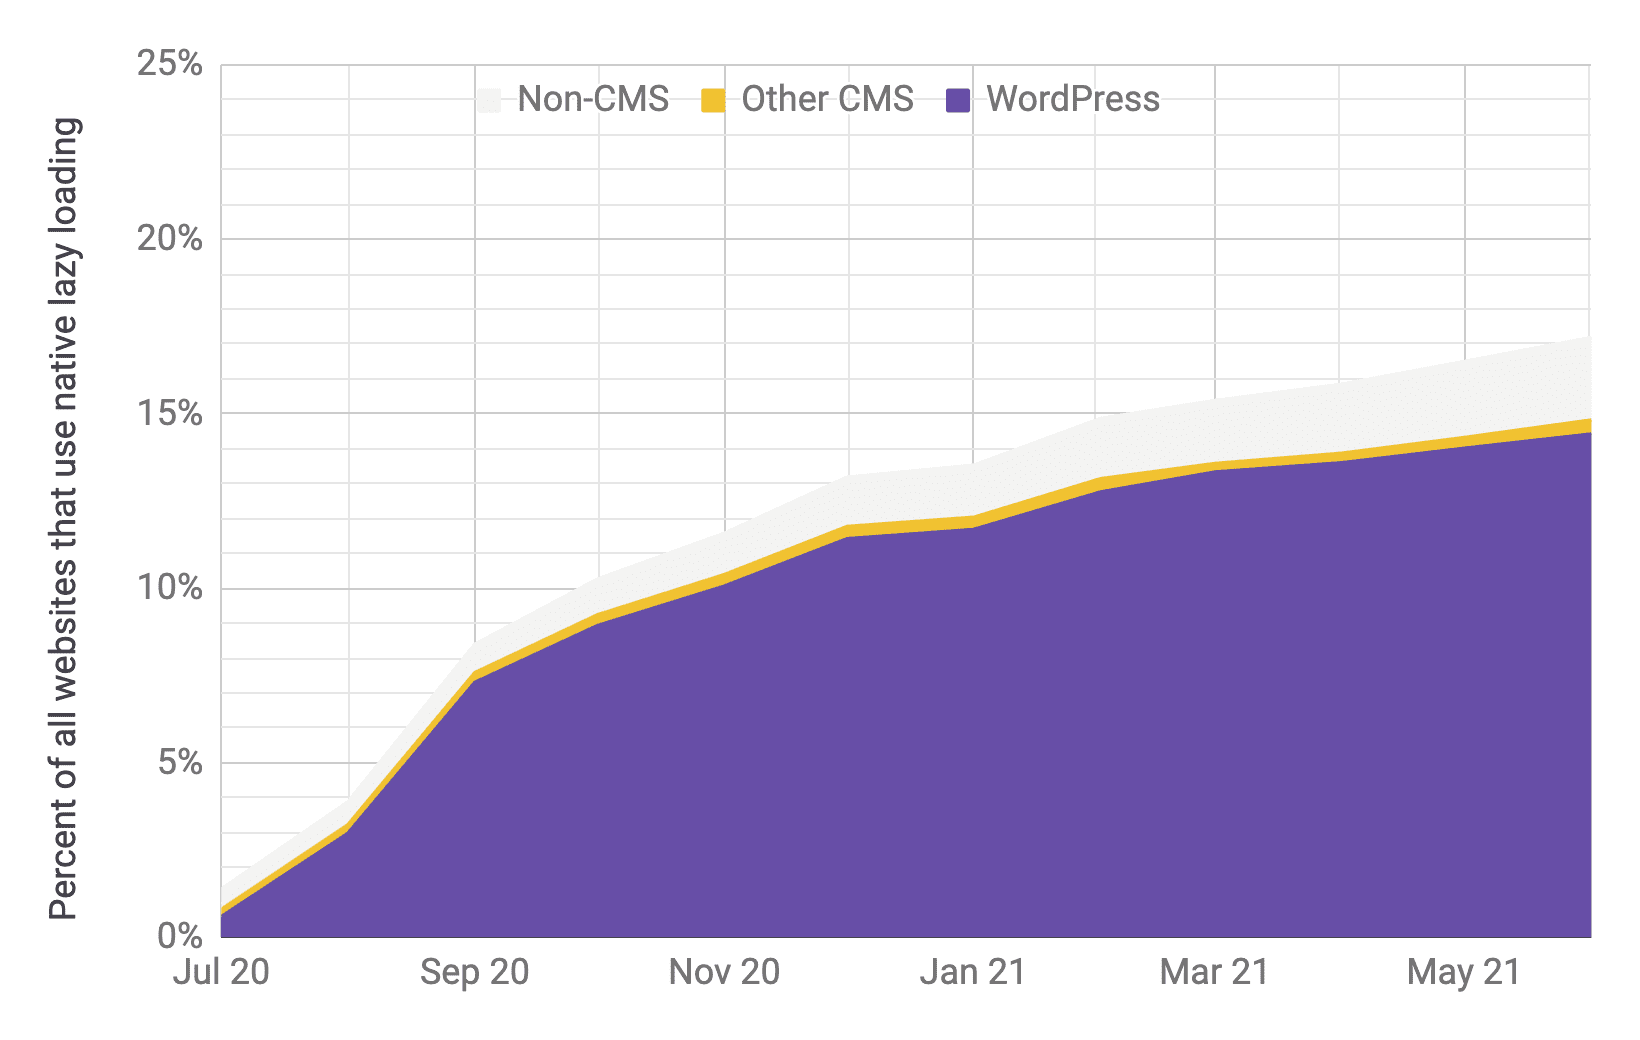 Временная диаграмма внедрения отложенной загрузки, где WordPress является преобладающим игроком по сравнению с другими CMS и не-CMS, с пропорциями, аналогичными предыдущей диаграмме. Показано, что общий уровень внедрения быстро увеличился с 1% до 17% с июля 2020 года по июнь 2021 года.